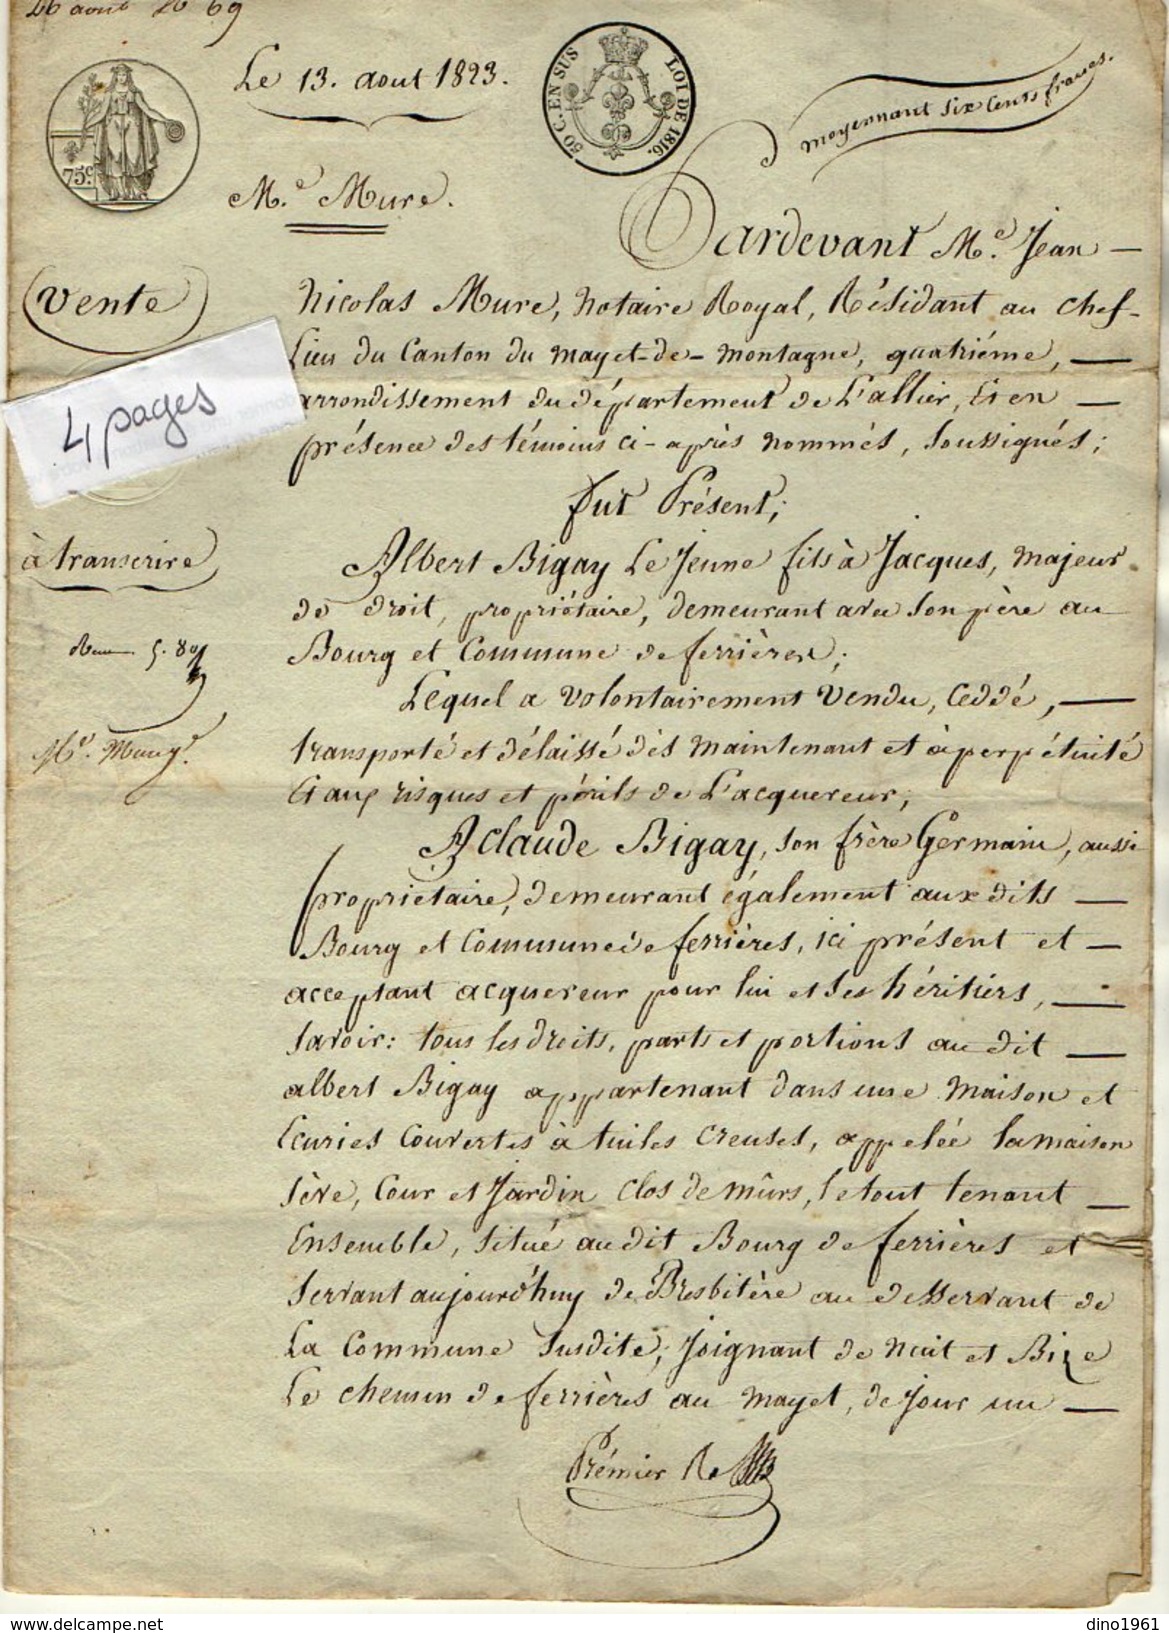 VP9803 - LE MAYET DE MONTAGNE - Acte De 1823 - Entre A. BIGAY & C.BIGAY Vente De Droits Sur Une Maison Situé à FERRIERES - Manuscrits